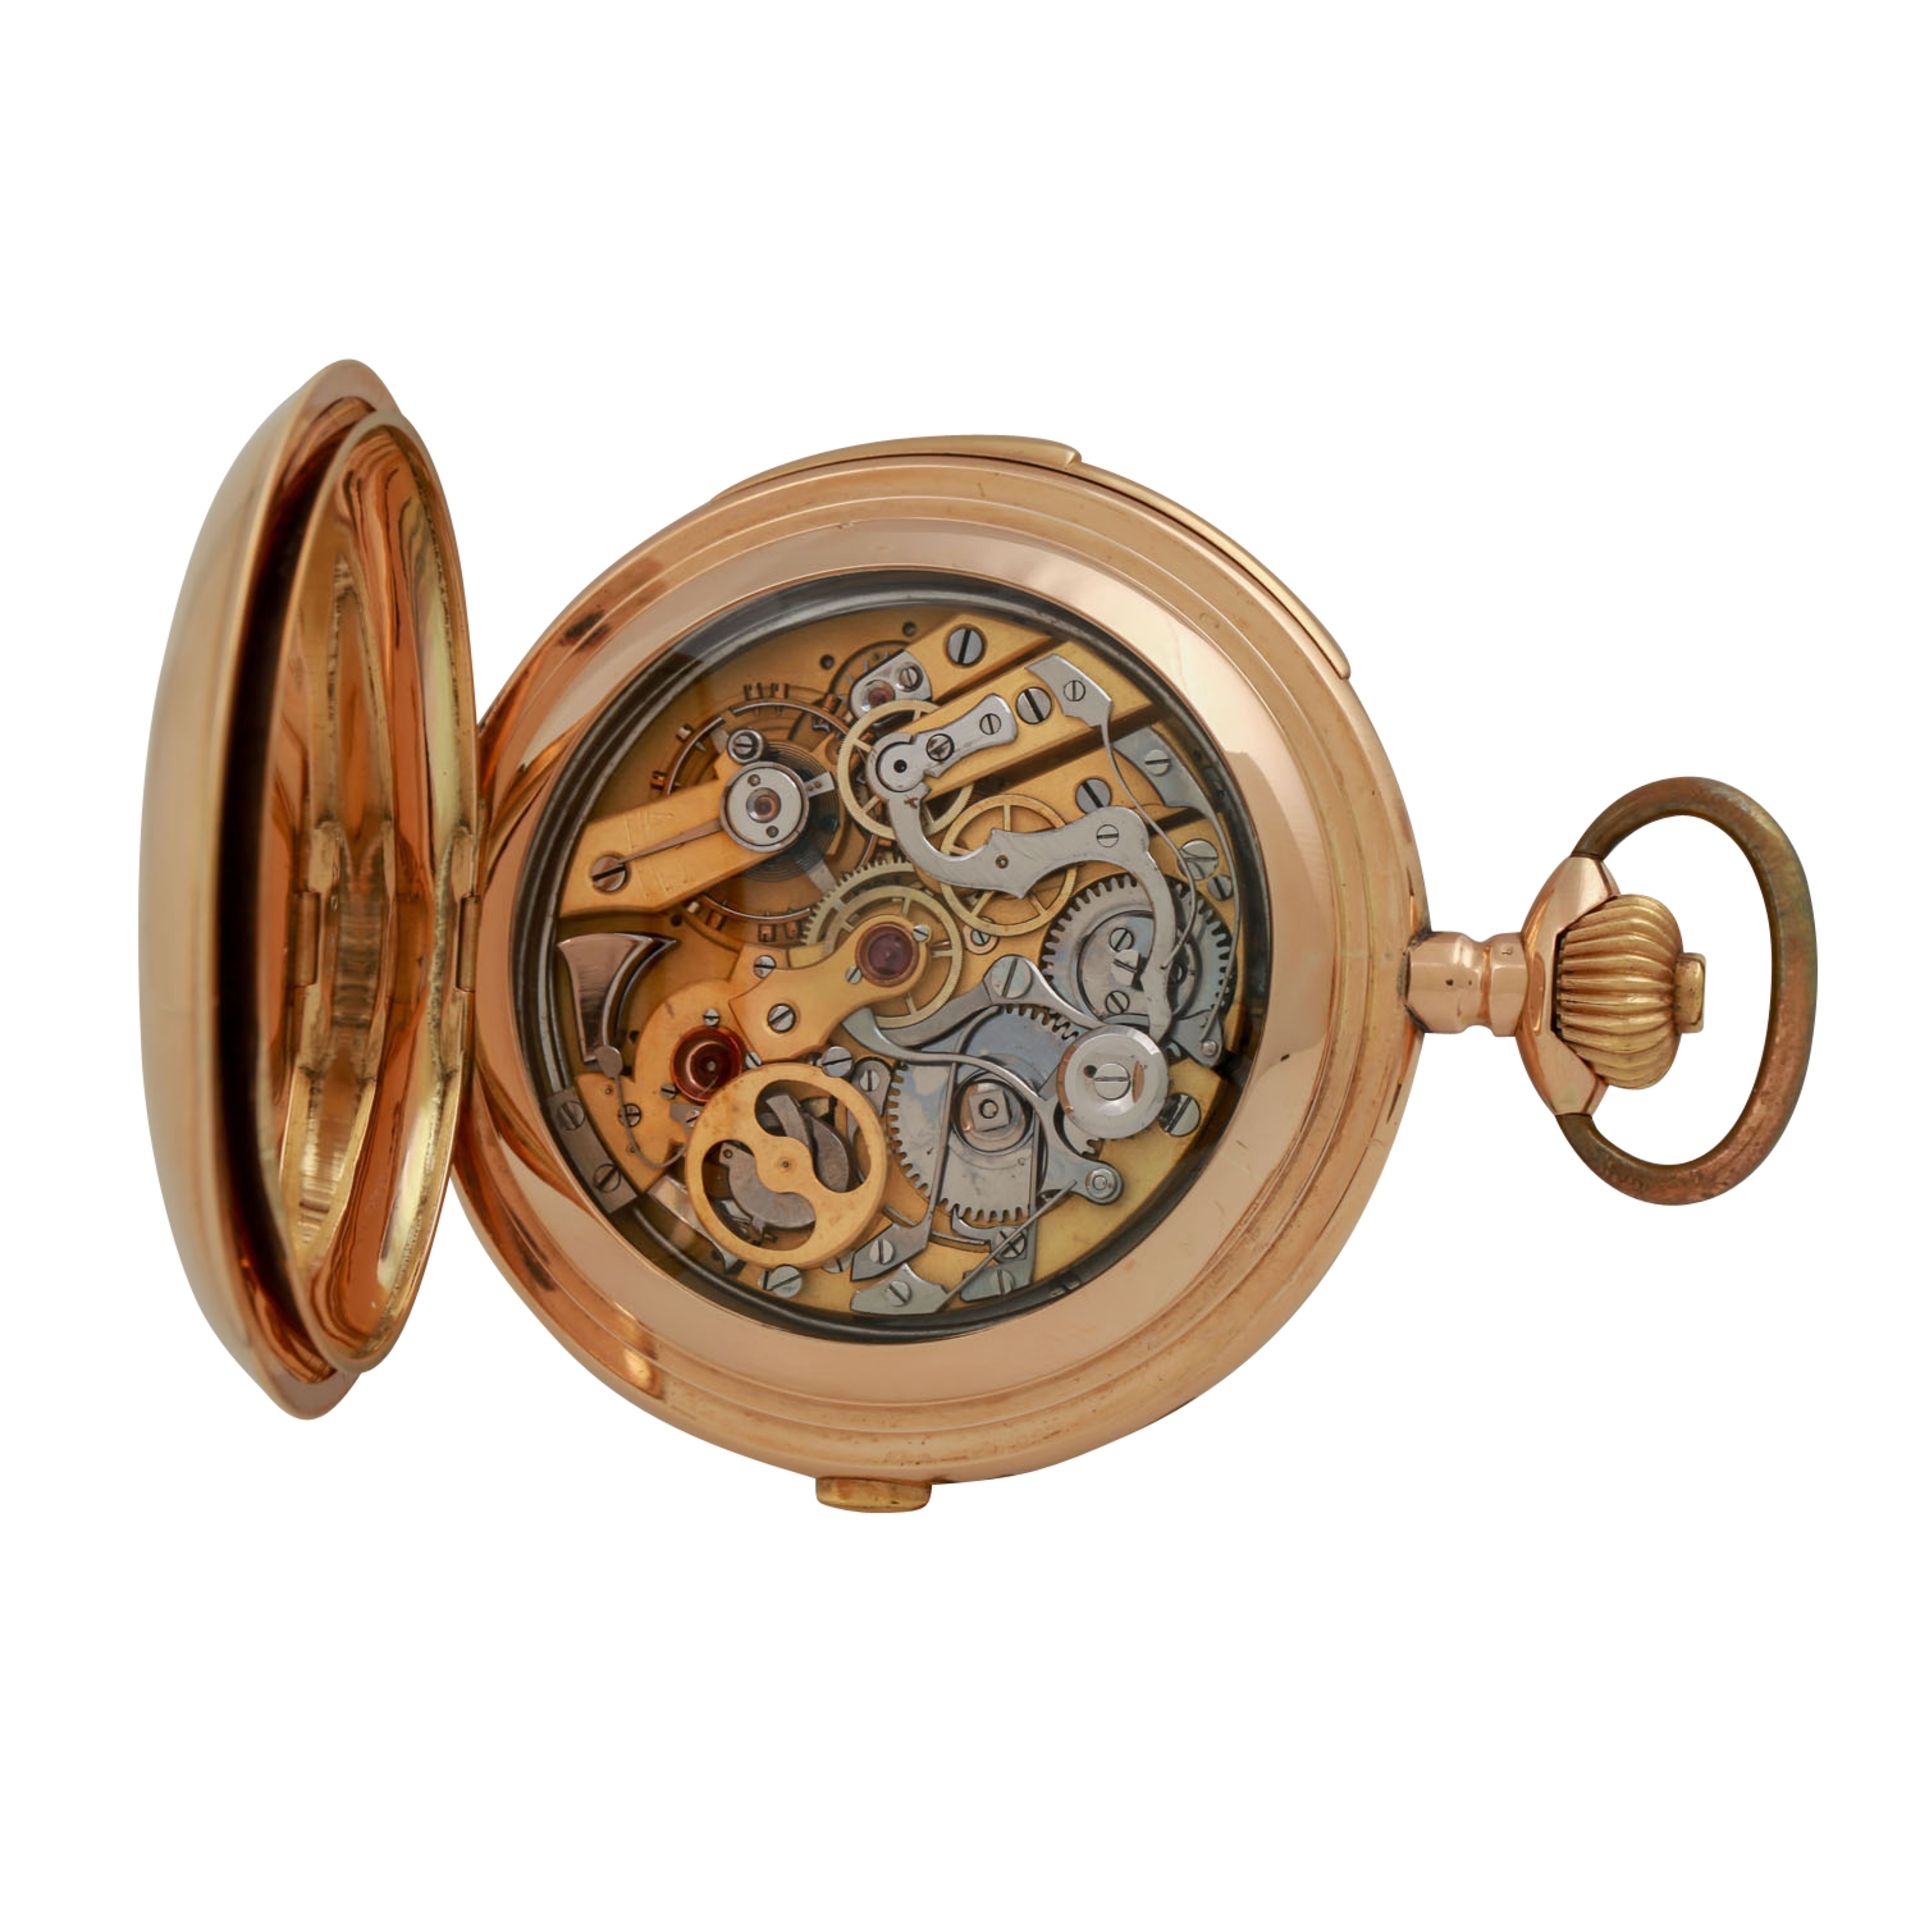 Taschenuhr mit Minutenrepetition und Chronograph, SCHWEIZ um 1900/1910.Savonette-Gehäuse in Gold - Bild 5 aus 10